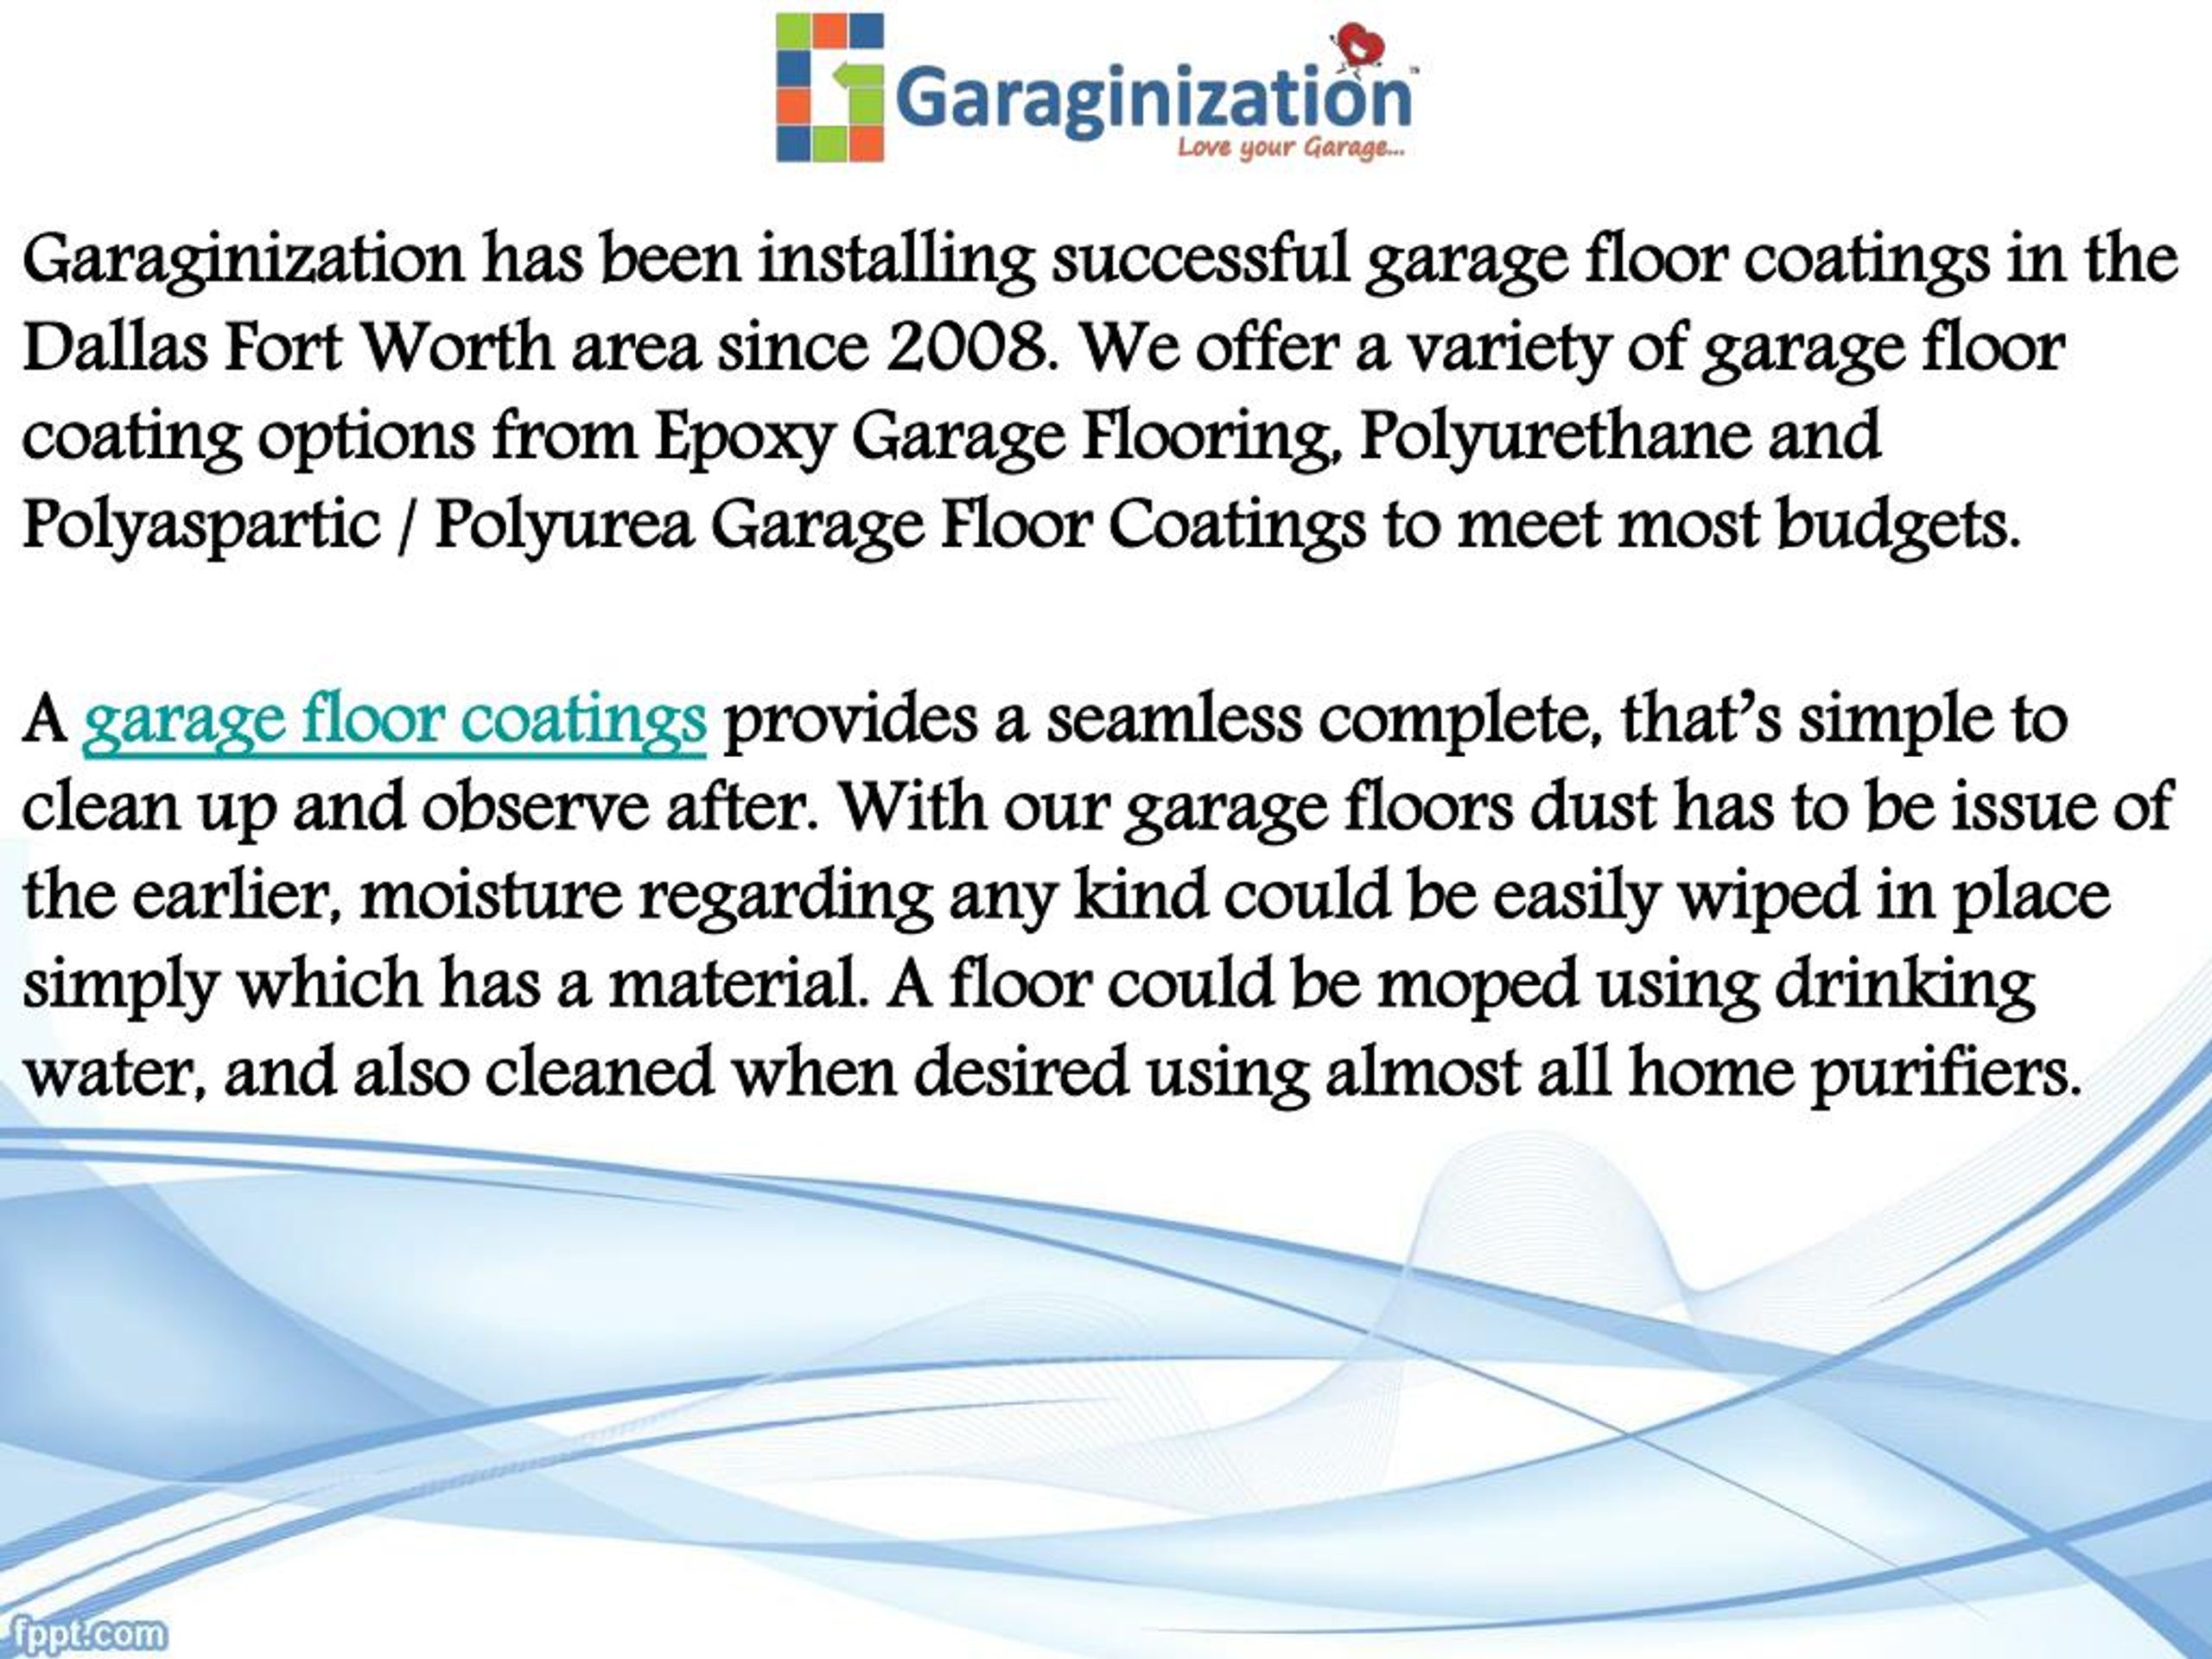 Ppt Garage Floor Coating Services From Garaginization Powerpoint